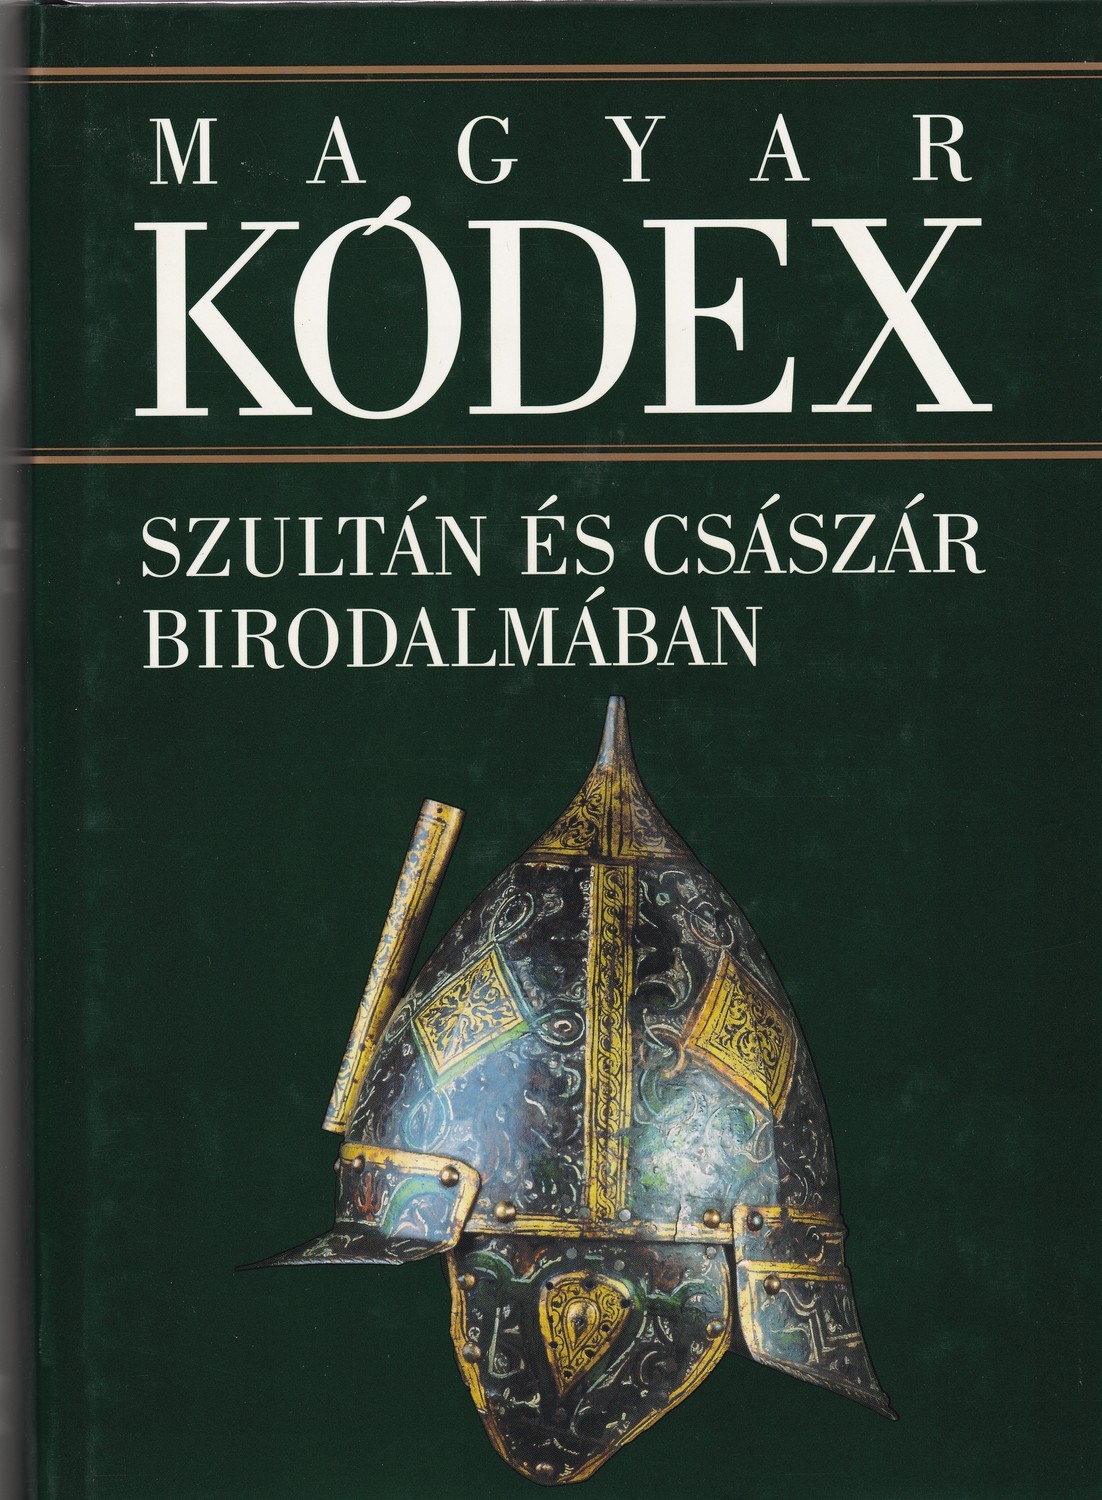 Magyar kódex 3. kötet: Szultán és császár birodalmában. Magyarország művelődéstörténete 1526-1790 (Rippl-Rónai Múzeum CC BY-NC-ND)